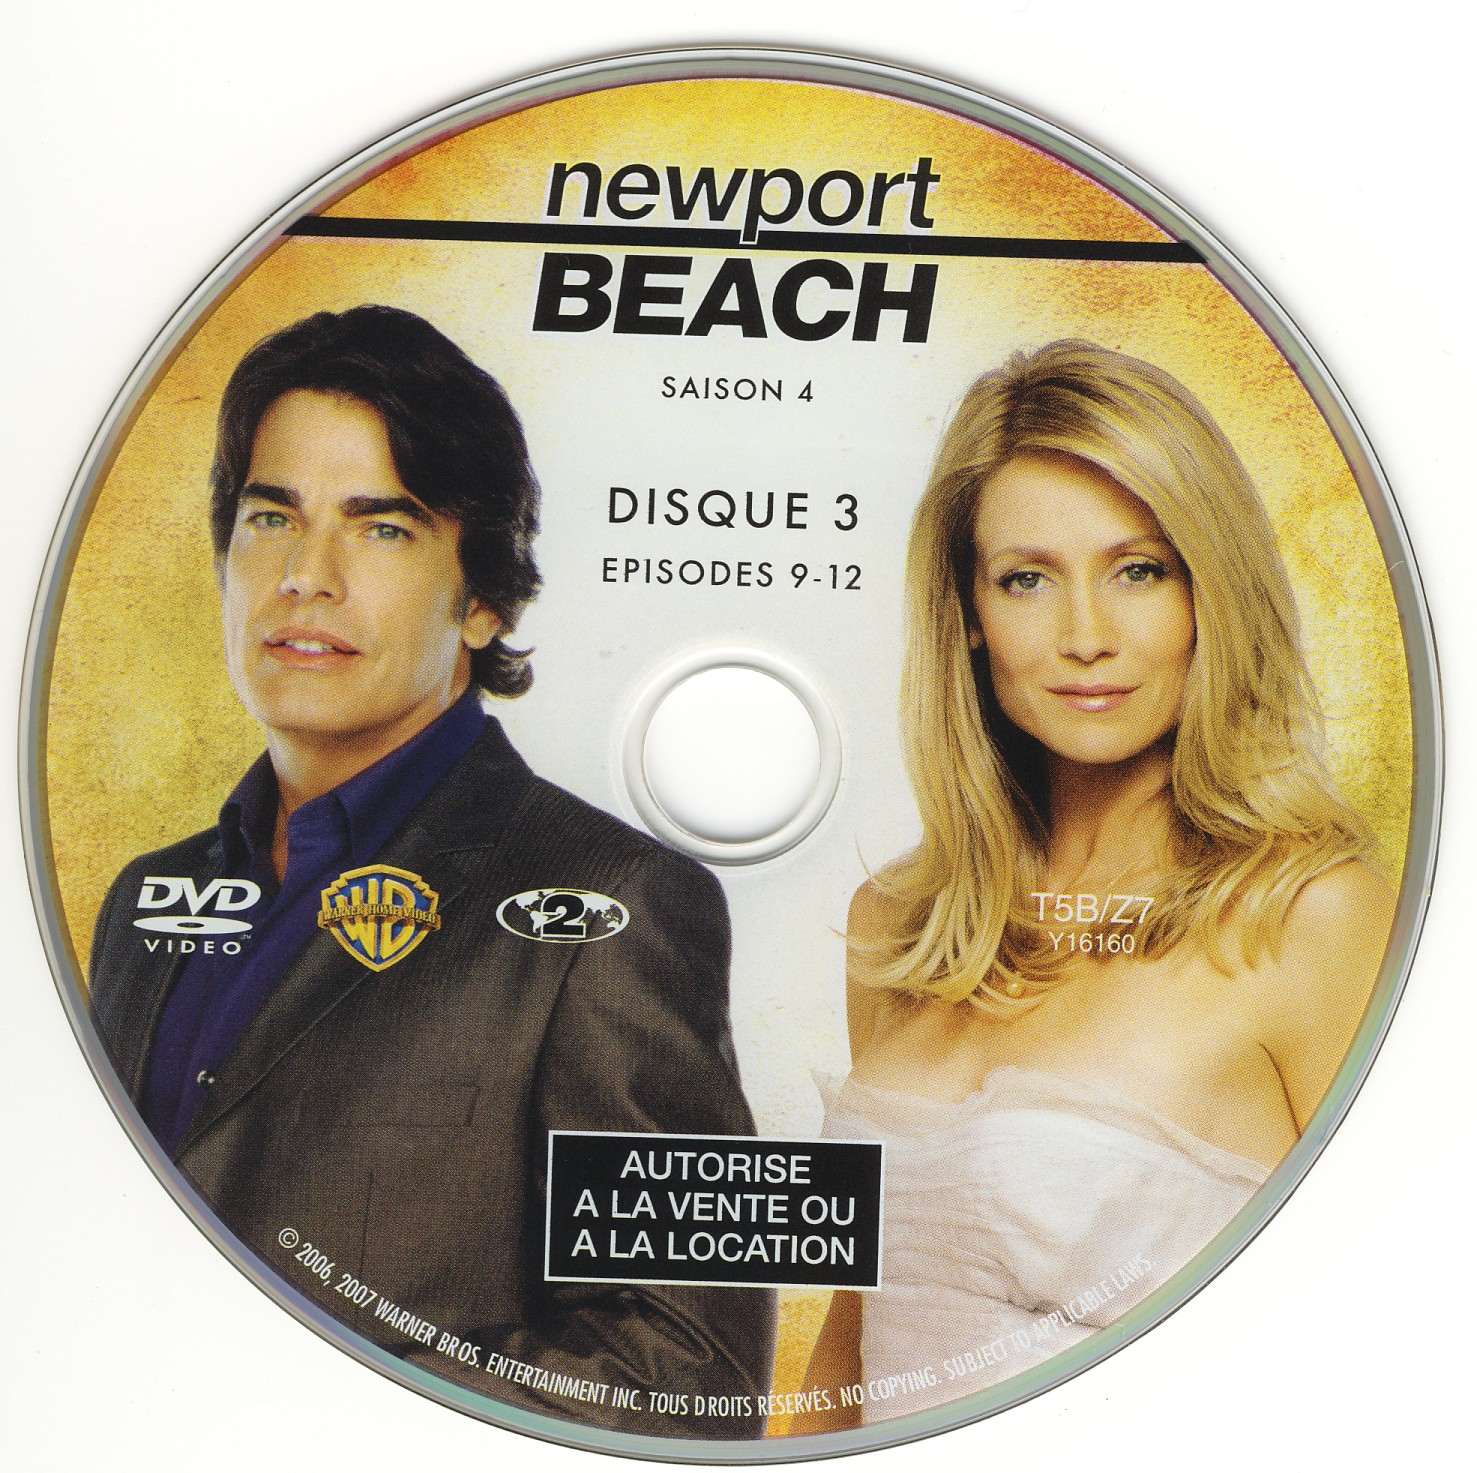 Newport Beach Saison 4 DISC 3